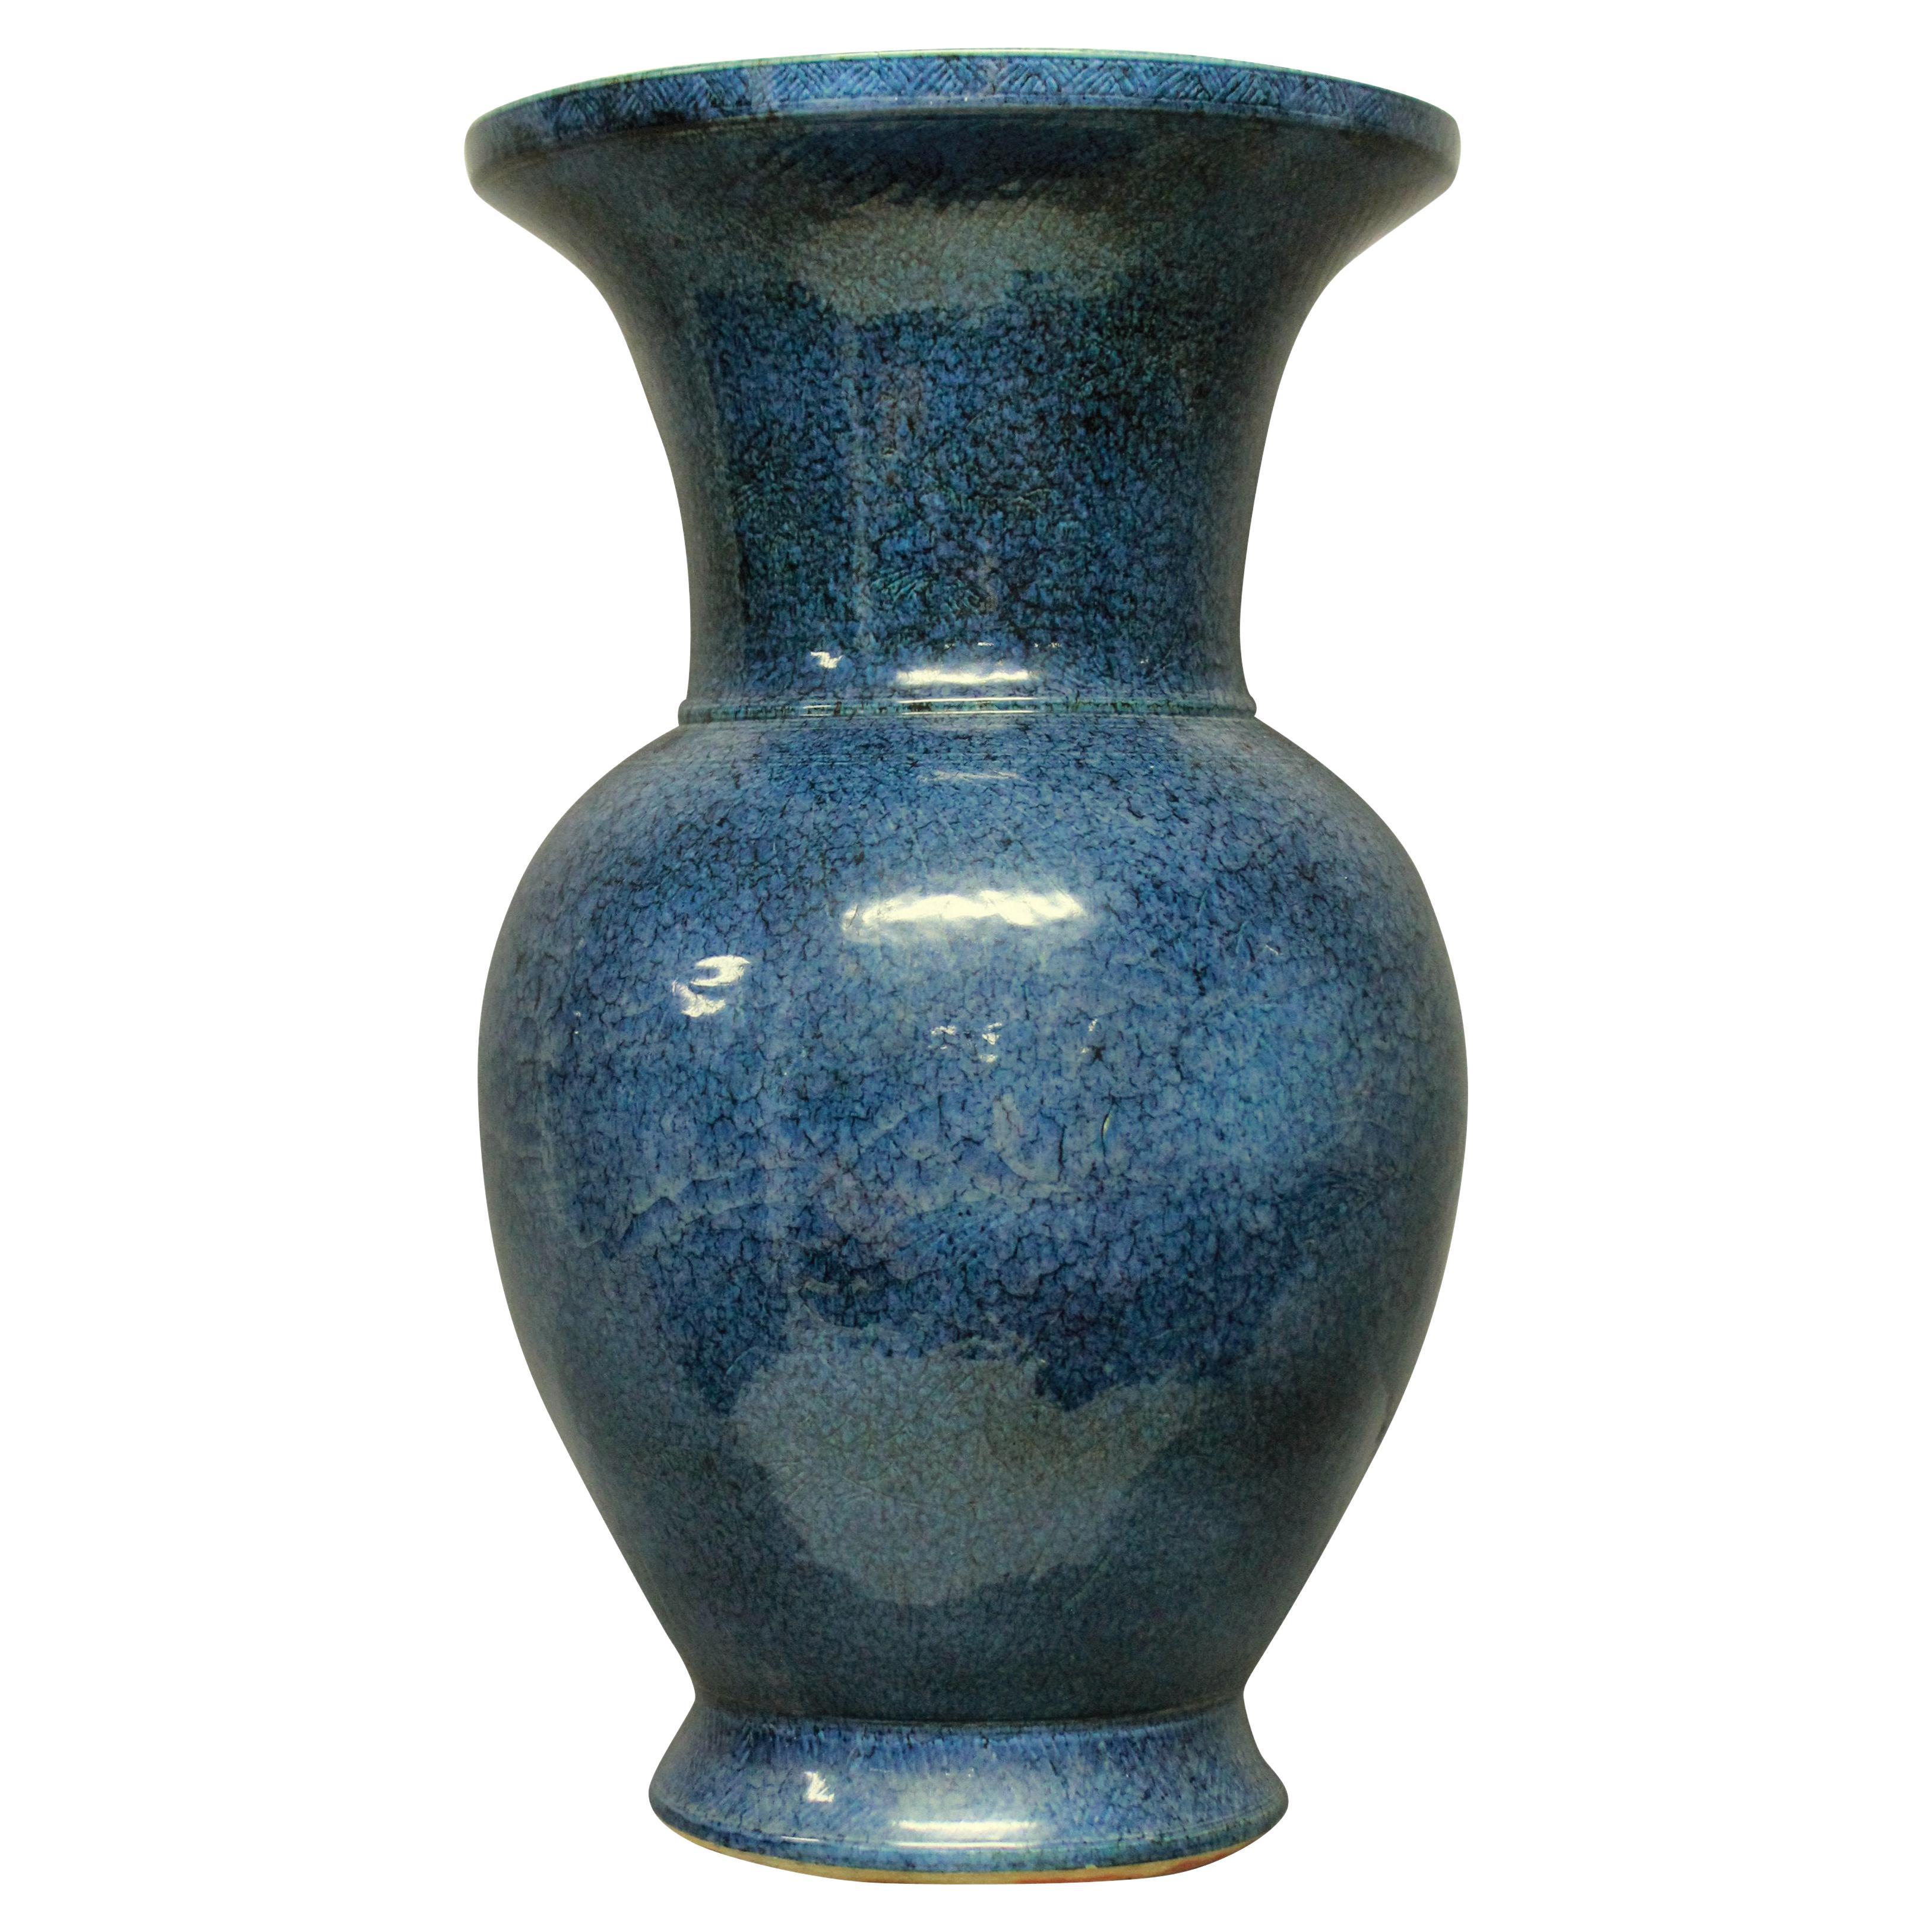 Very Large & Impressive Blue Ground Chinese Vase